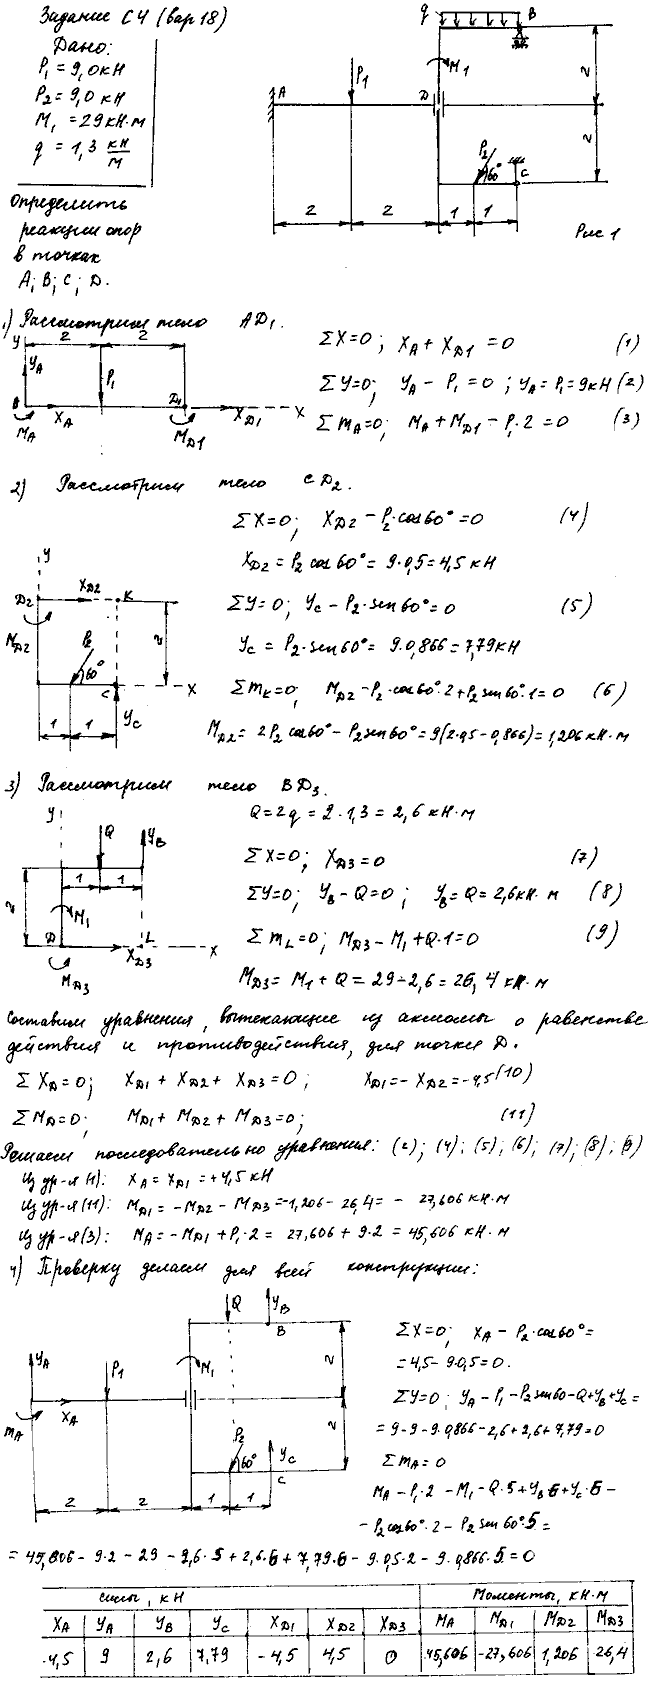 Задание C4 вариант 18. P1=9 кН; P2=9 кН; M1=29 кН*м; q=1,3 кН/м. Составные части соединены с помощью гладкой втулки малой длины.